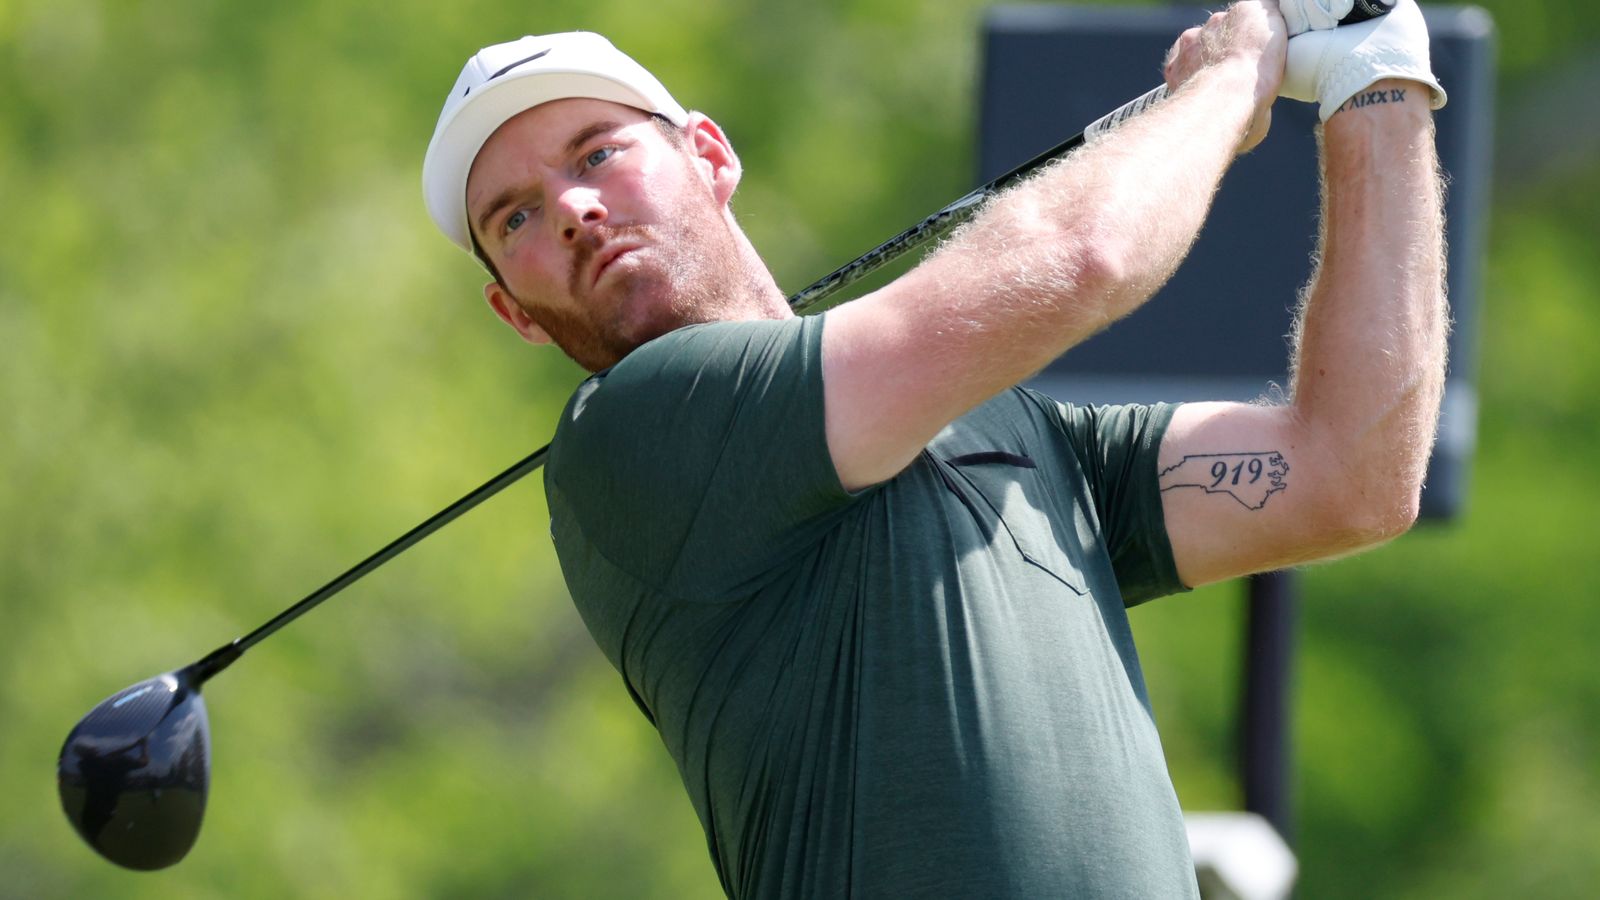 توفي لاعب الجولف في جولة PGA Grayson Murray عن عمر يناهز 30 عامًا، بعد يوم واحد من الانسحاب من البطولة |  اخبار العالم